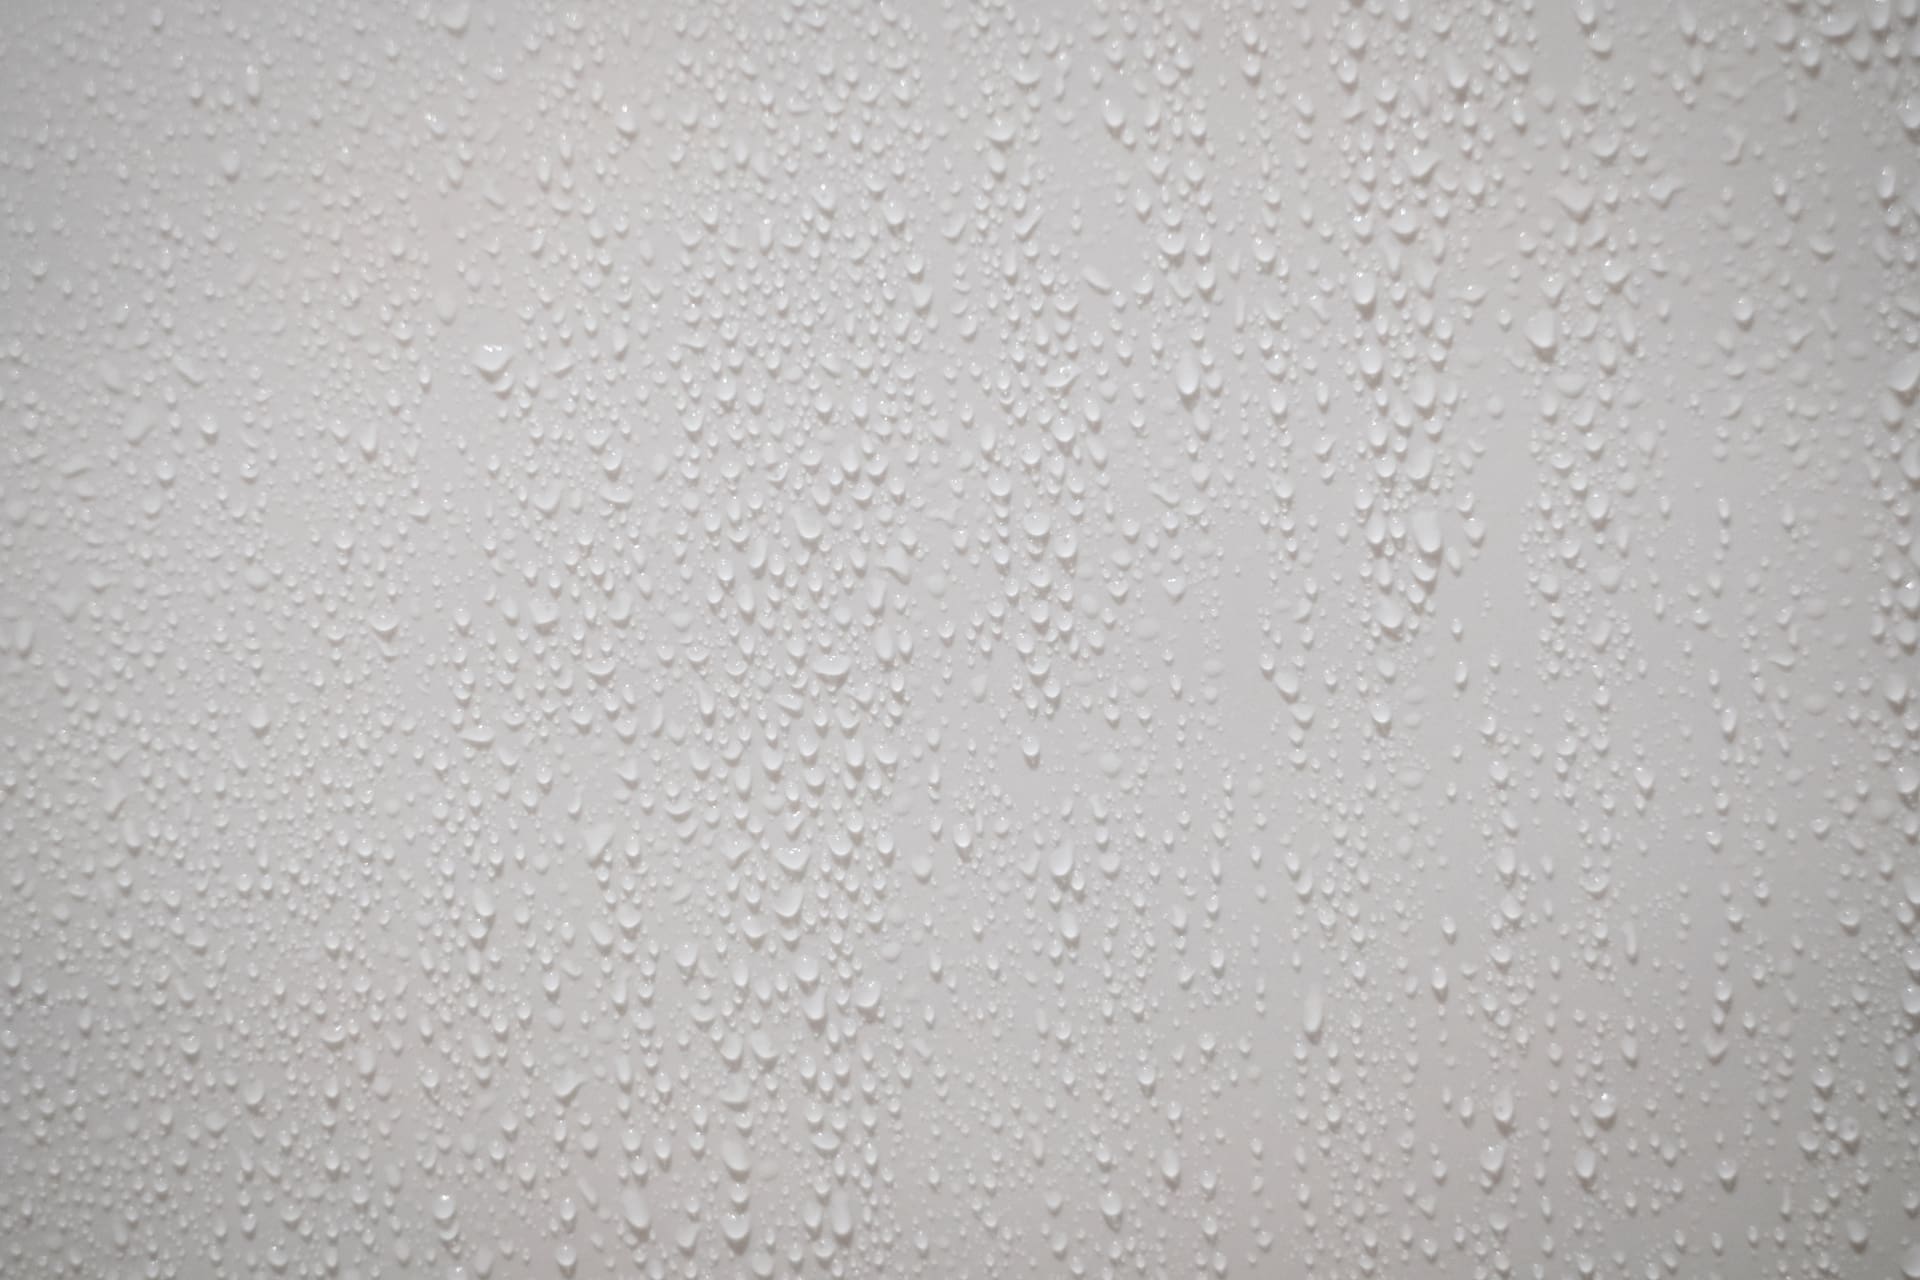 Wand feucht, aber kein Schimmel | Bei so viel Kondenswasser ist Schimmelbildung an den Wänden nur noch eine Frage der Zeit... (© BoszyArtis / stock.adobe.com)